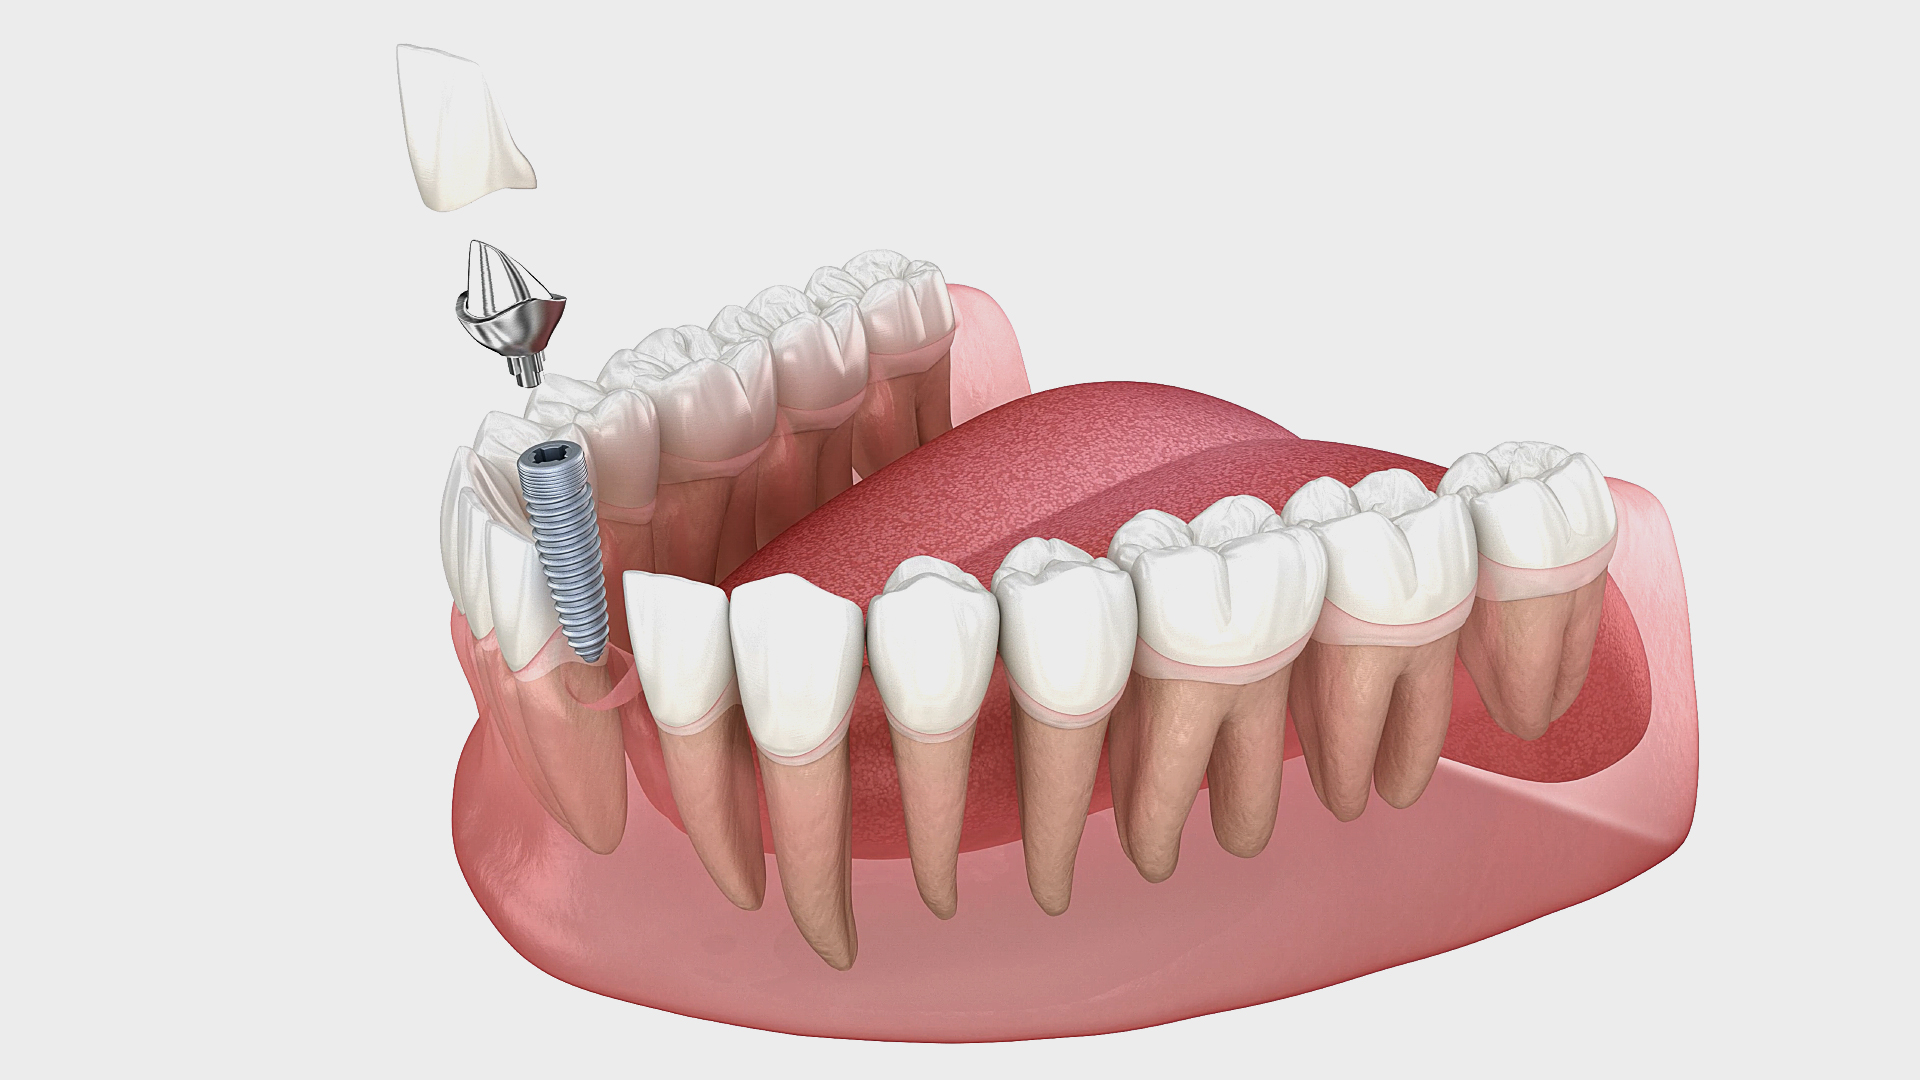 vue 3D de la bouche d’un patient et de son implant dentaire